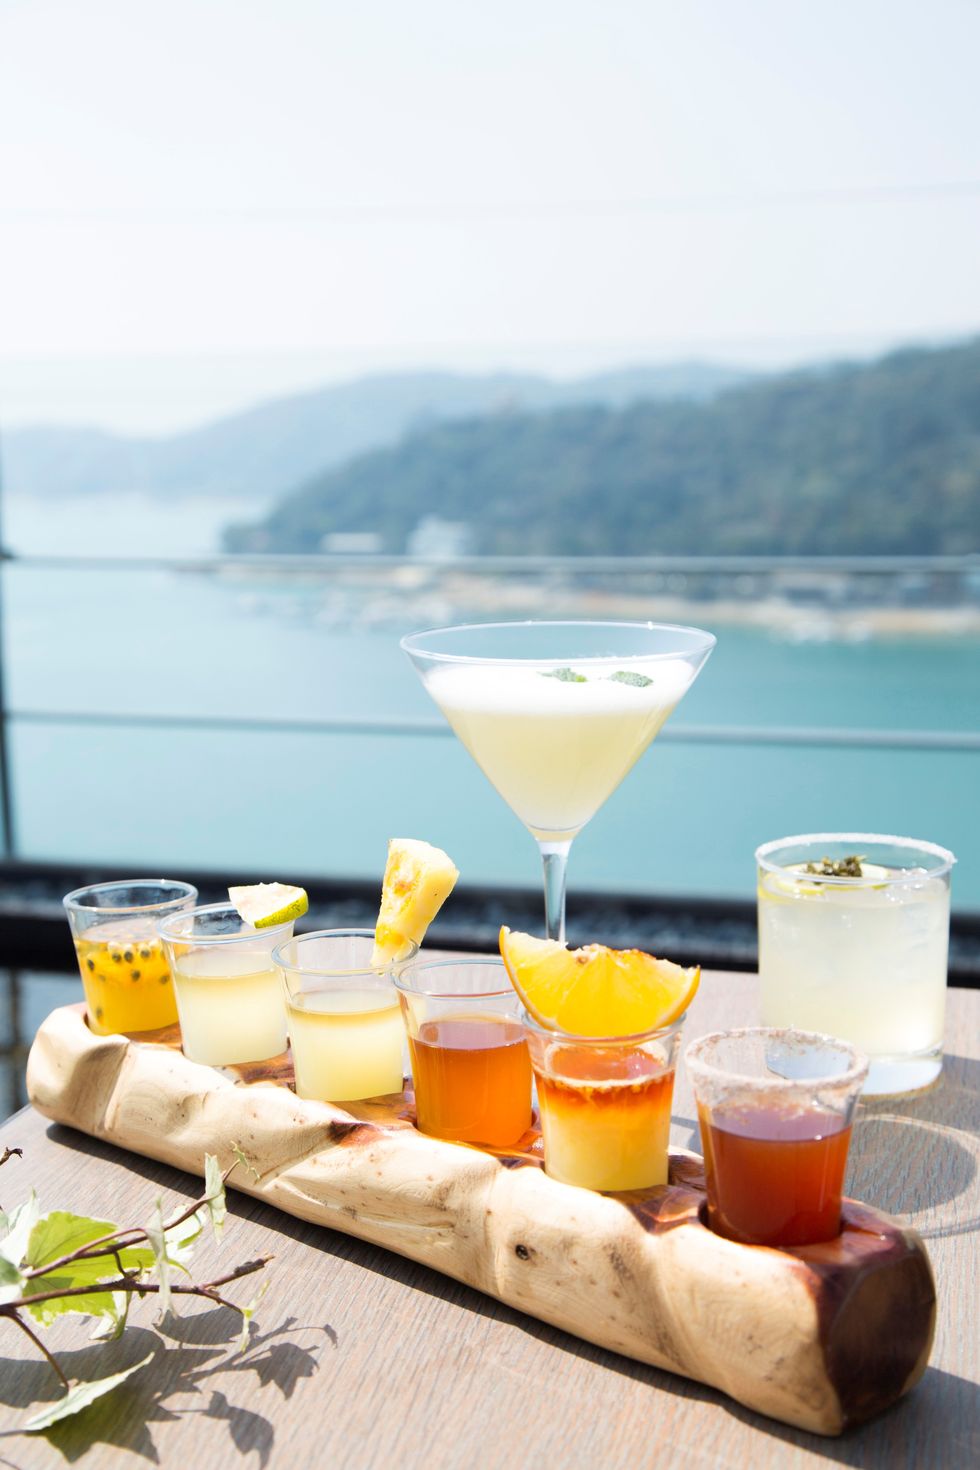 雲品溫泉酒店推出「台灣茶特調、紅茶雞蛋糕diy」等品茶之旅